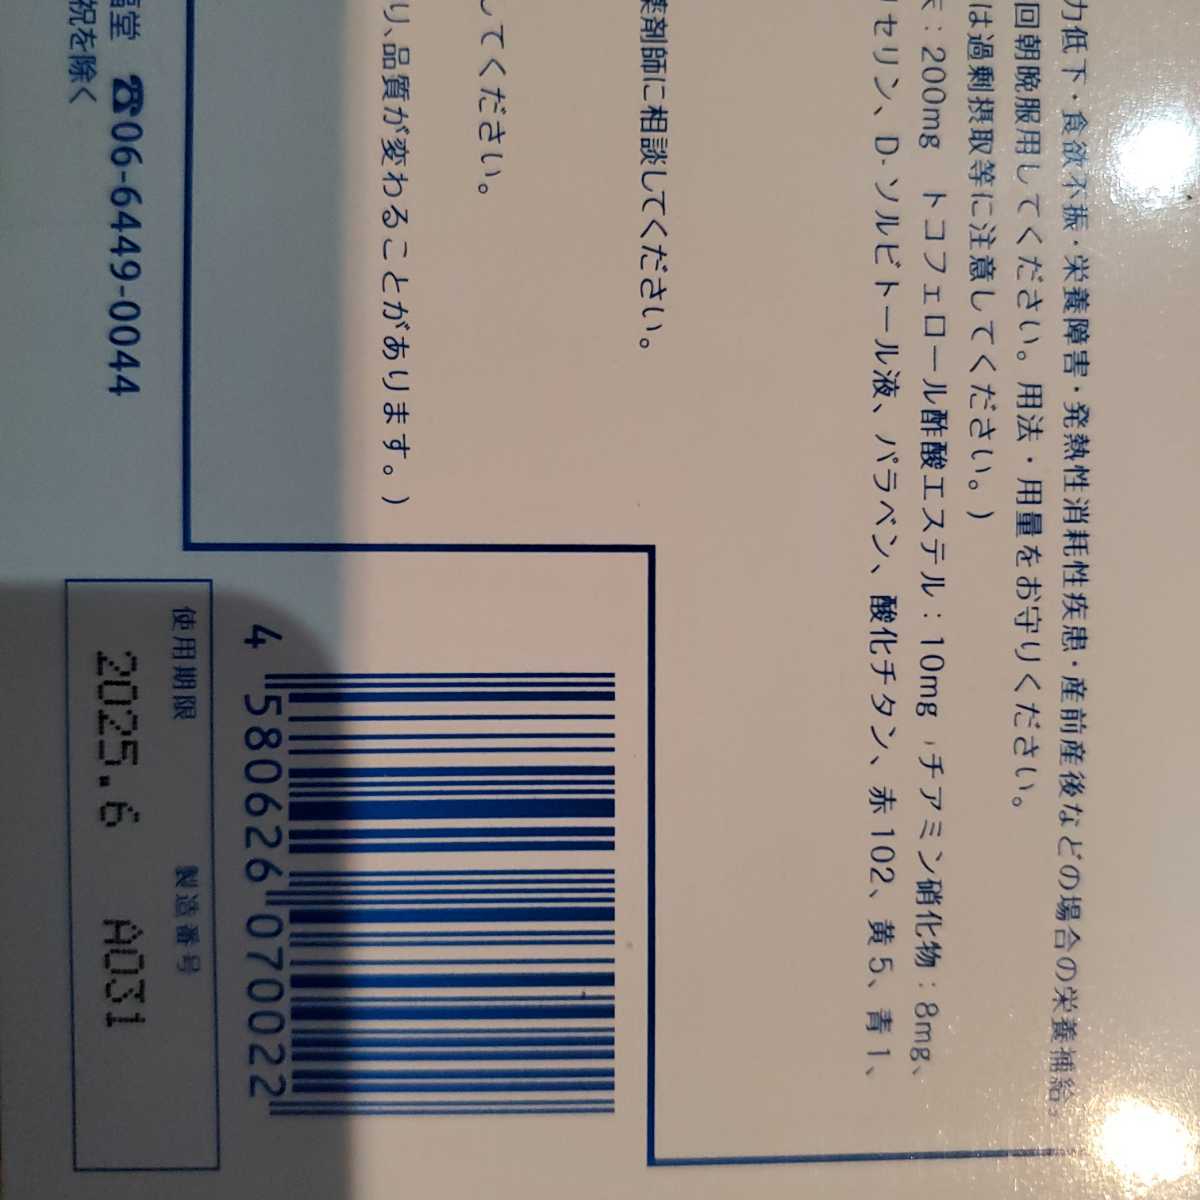 オマケ付】プロキオン 60カプセル 3箱セット【新品未使用未開封